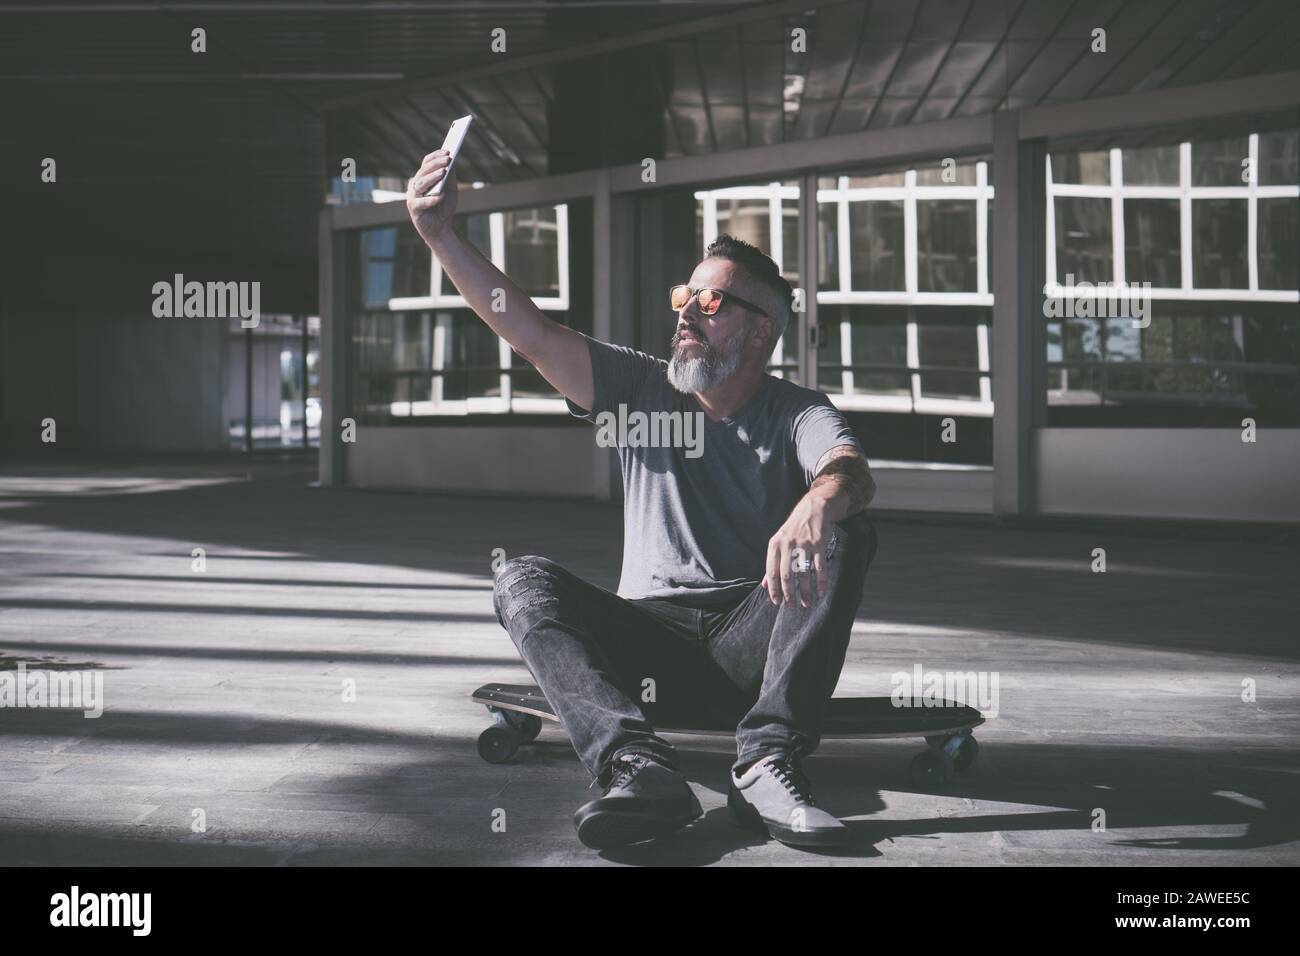 Skater, der ein selfie auf einem Skateboard nimmt Stockfoto